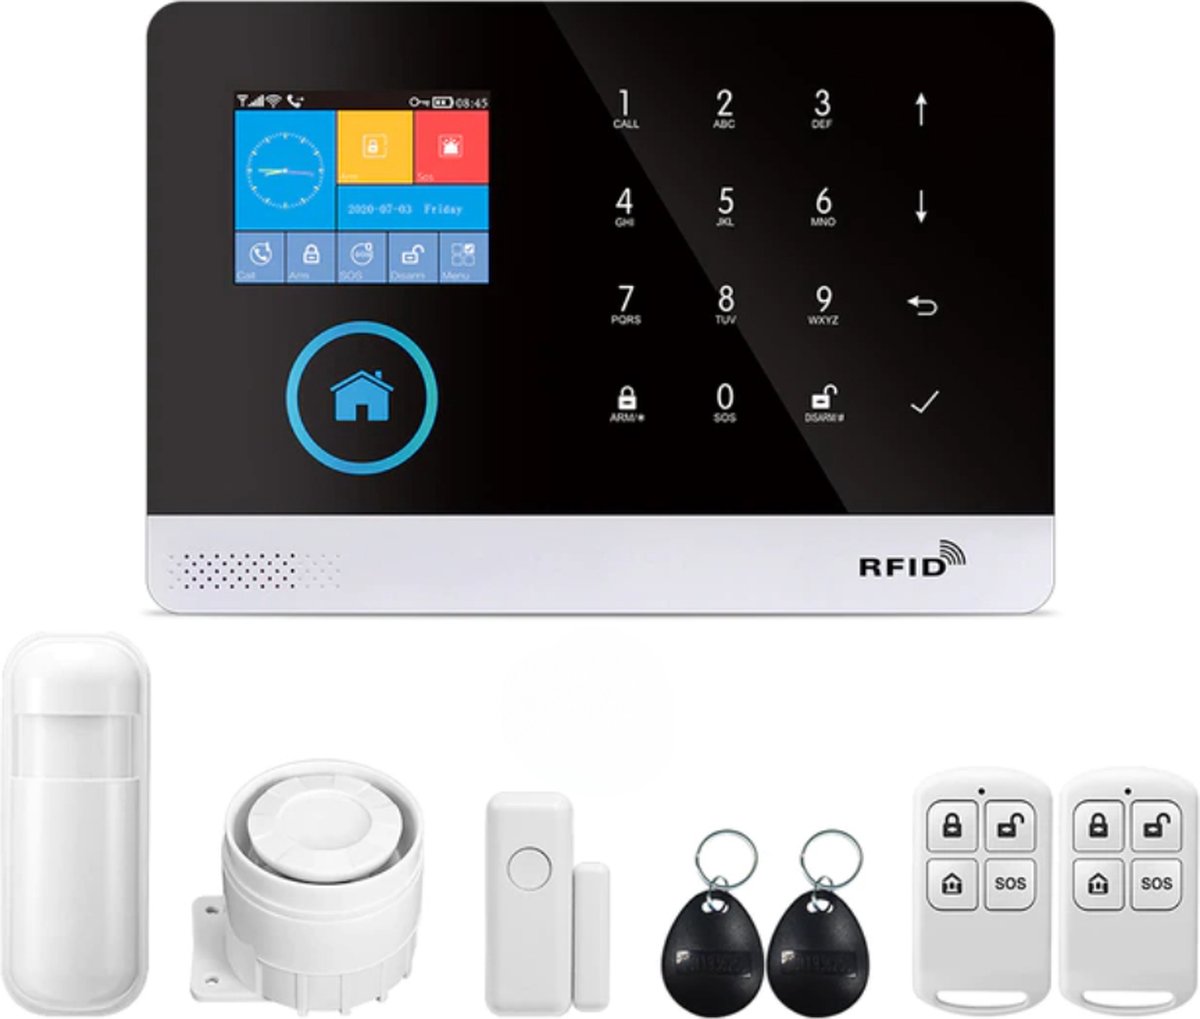 Alarmsysteem Voor Thuis | Smart Home App - Beweegsensor | Alarm - Security & Safety